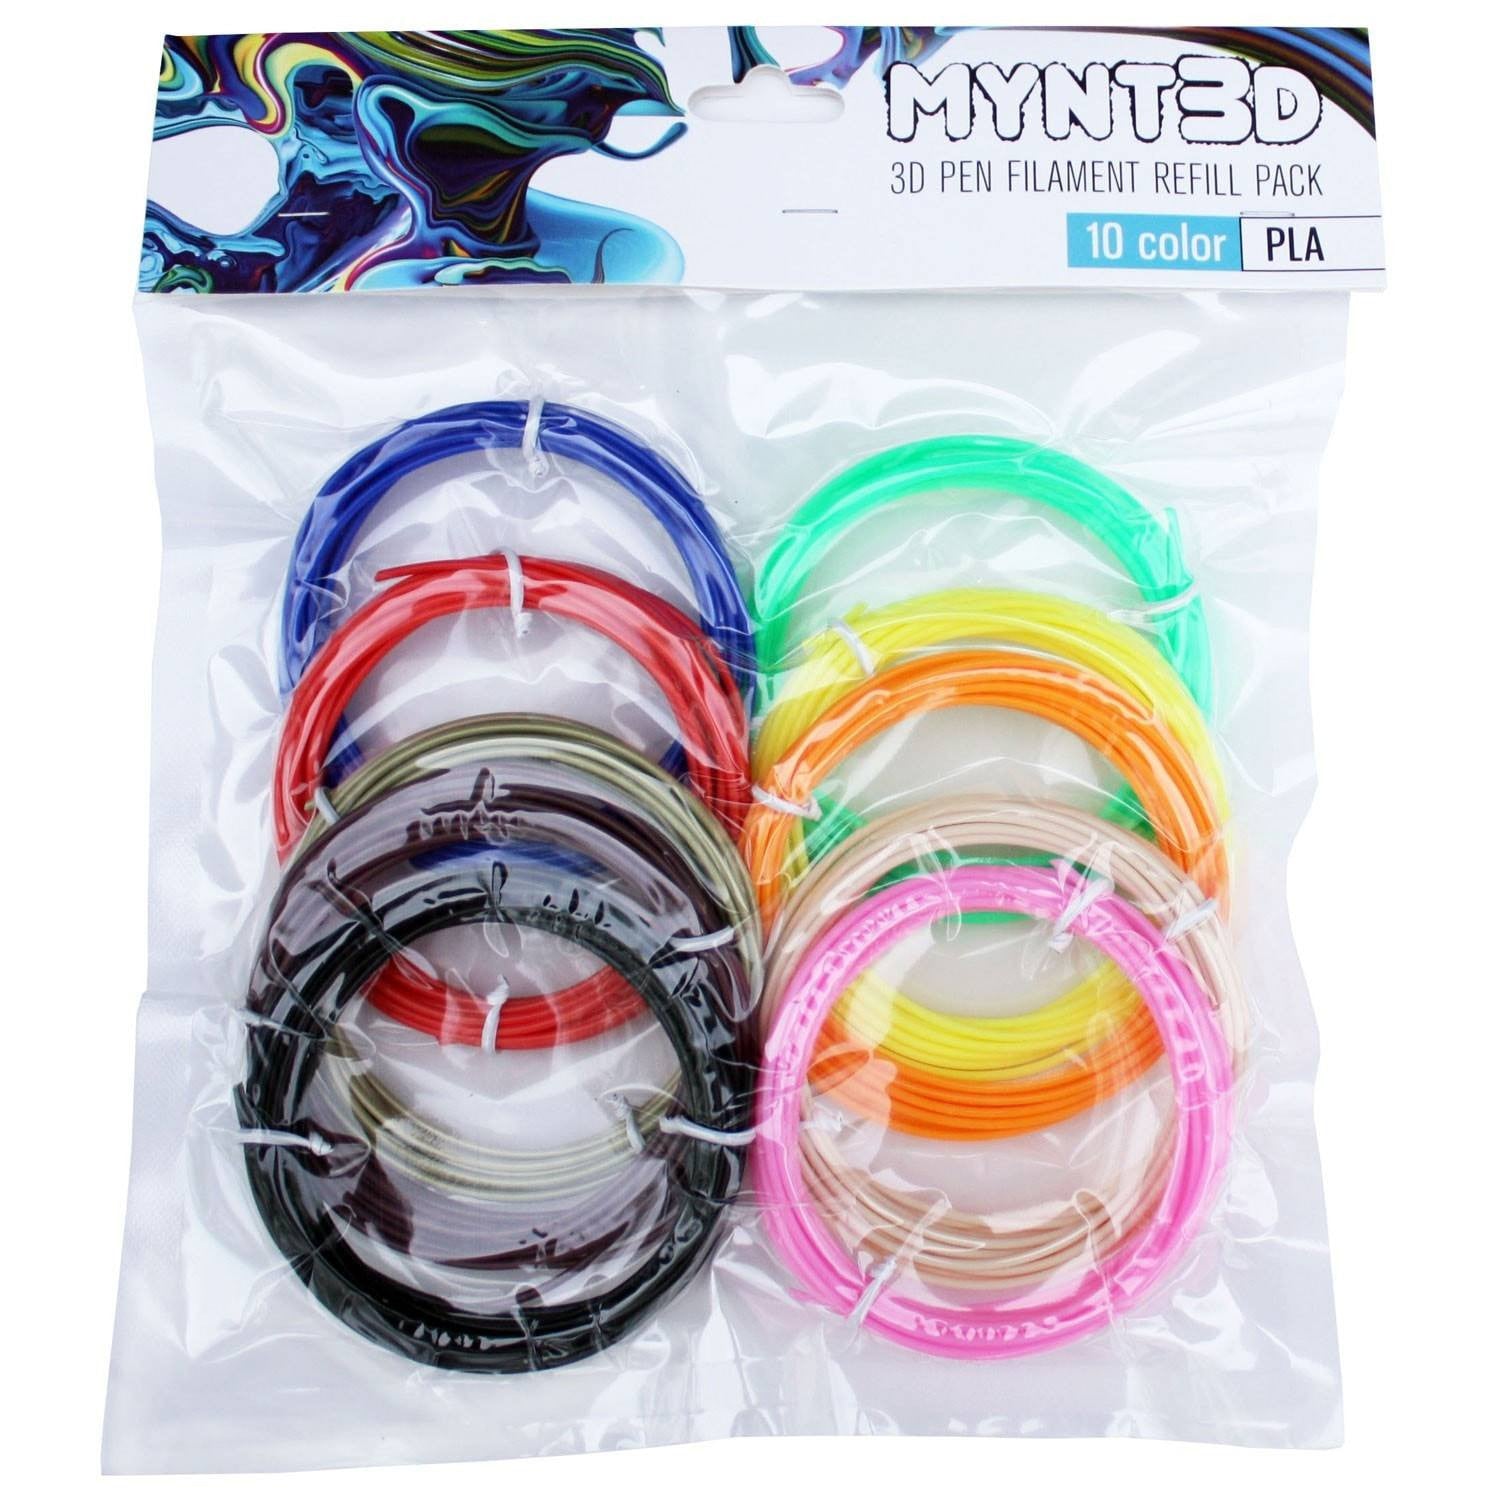 MYNT3D PLA 3D Pen Filament Refill Pack (10 Color, 3M Each)